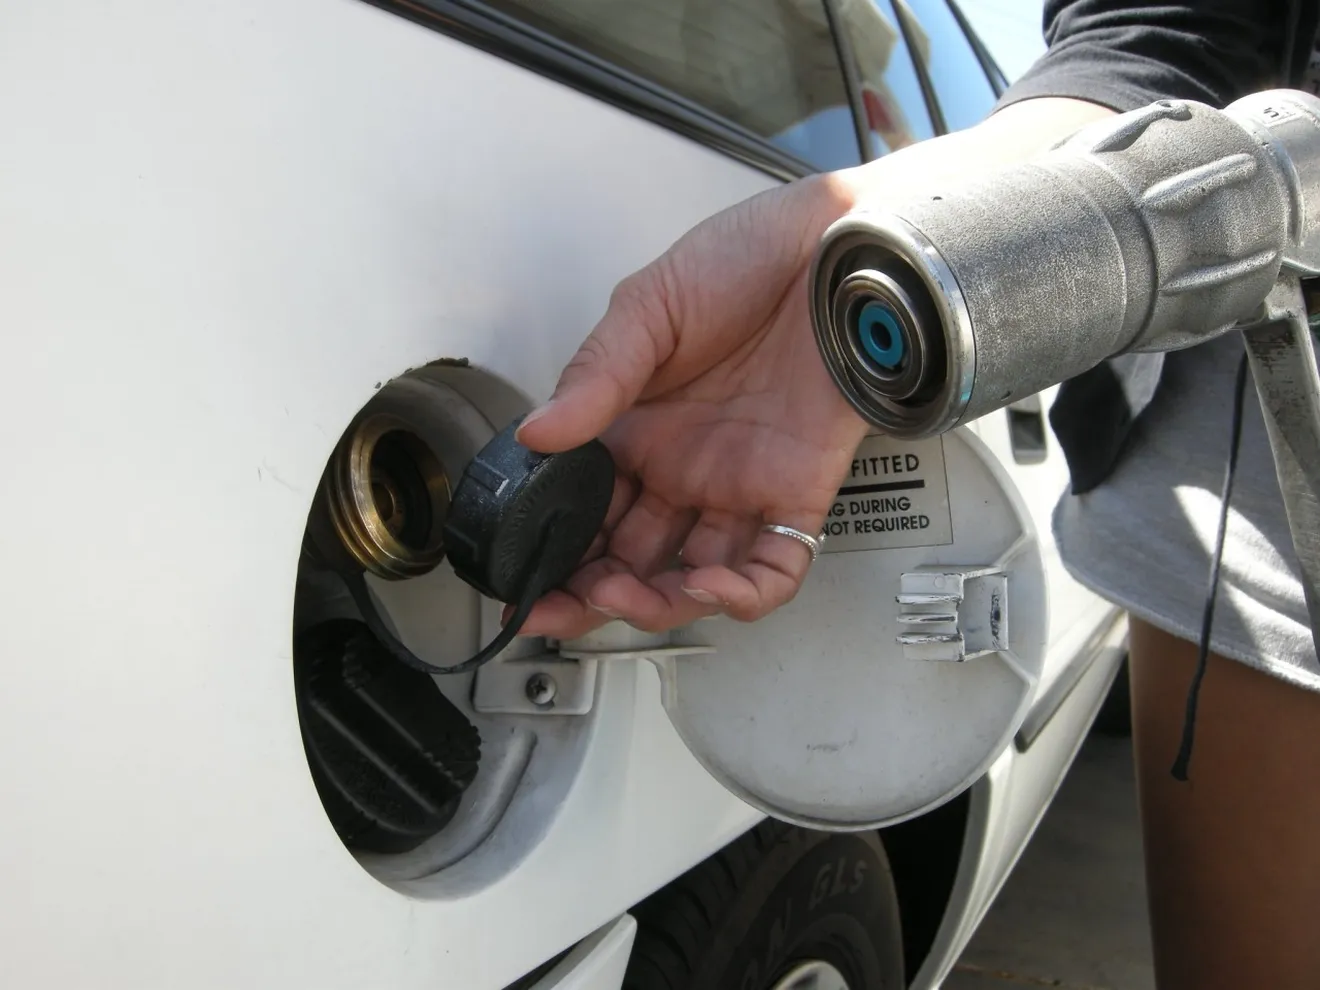 Taxistas y flotas de empresa siguen apostando por el GLP para reducir el gasto de combustible y emisiones